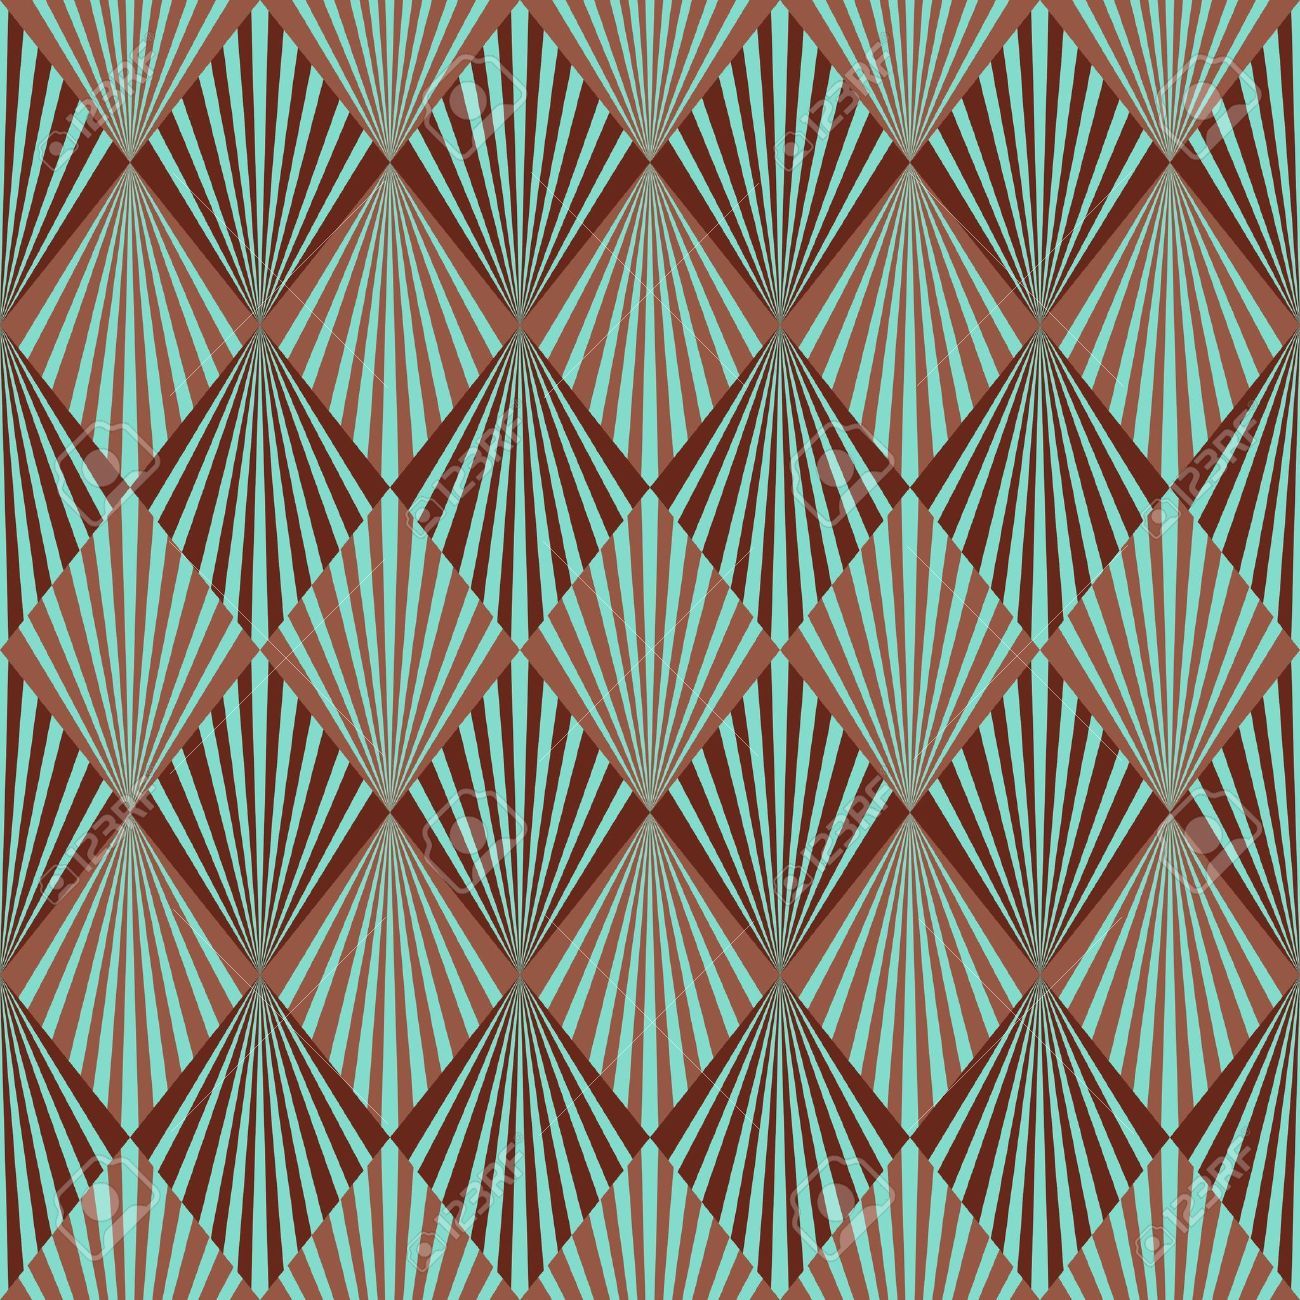 art deco style wallpaper,pattern,line,pattern,design,symmetry